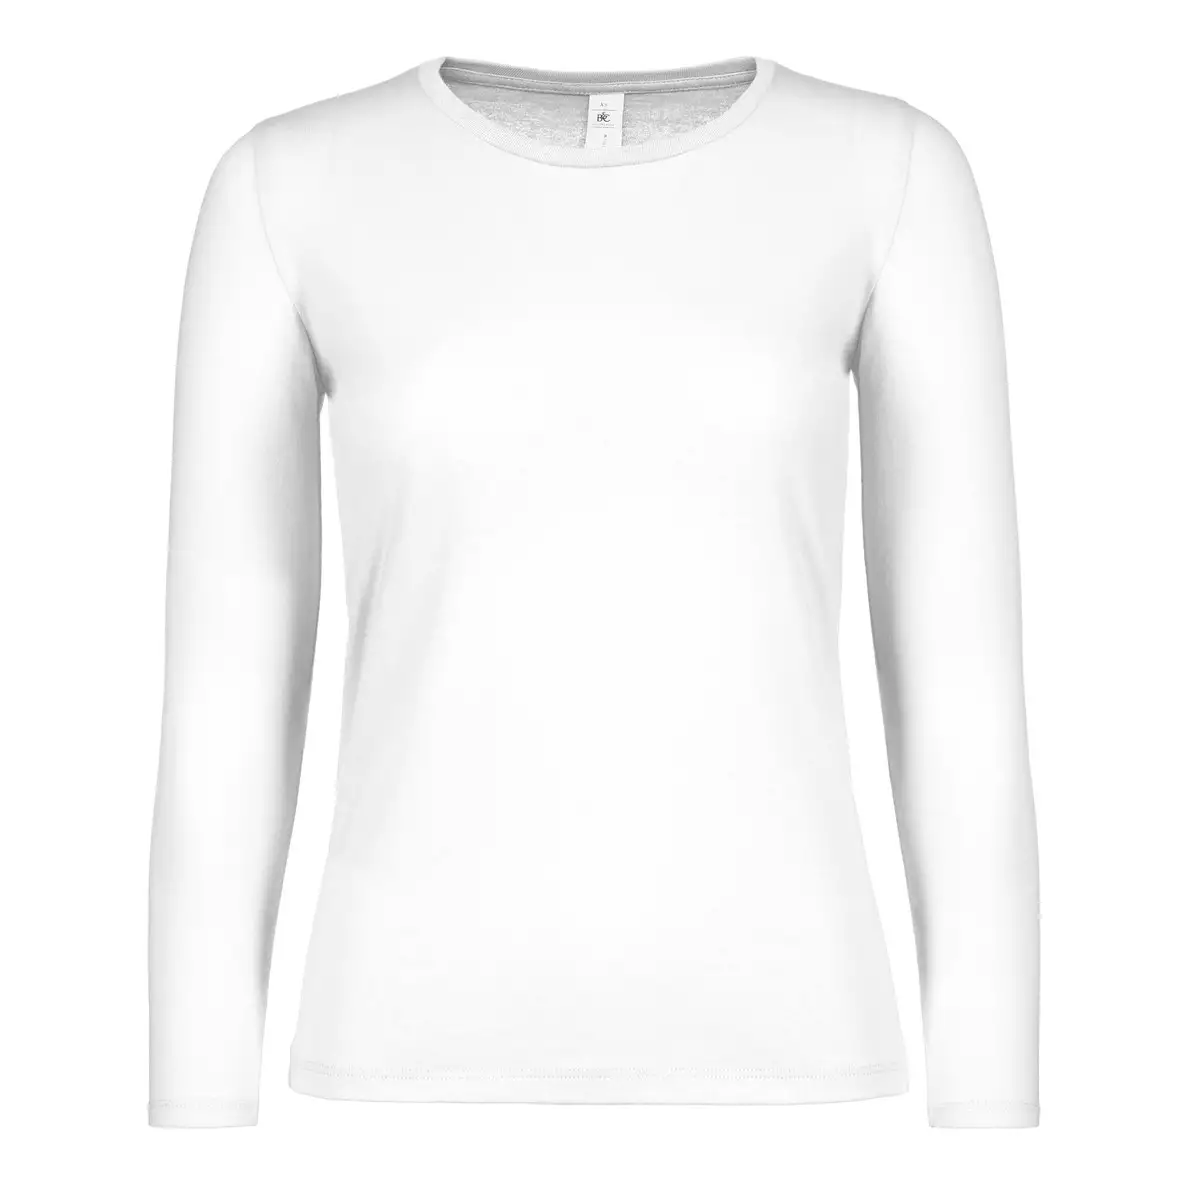 T-Shirt Manica Lunga Cotone Personalizzata - B&C Collection